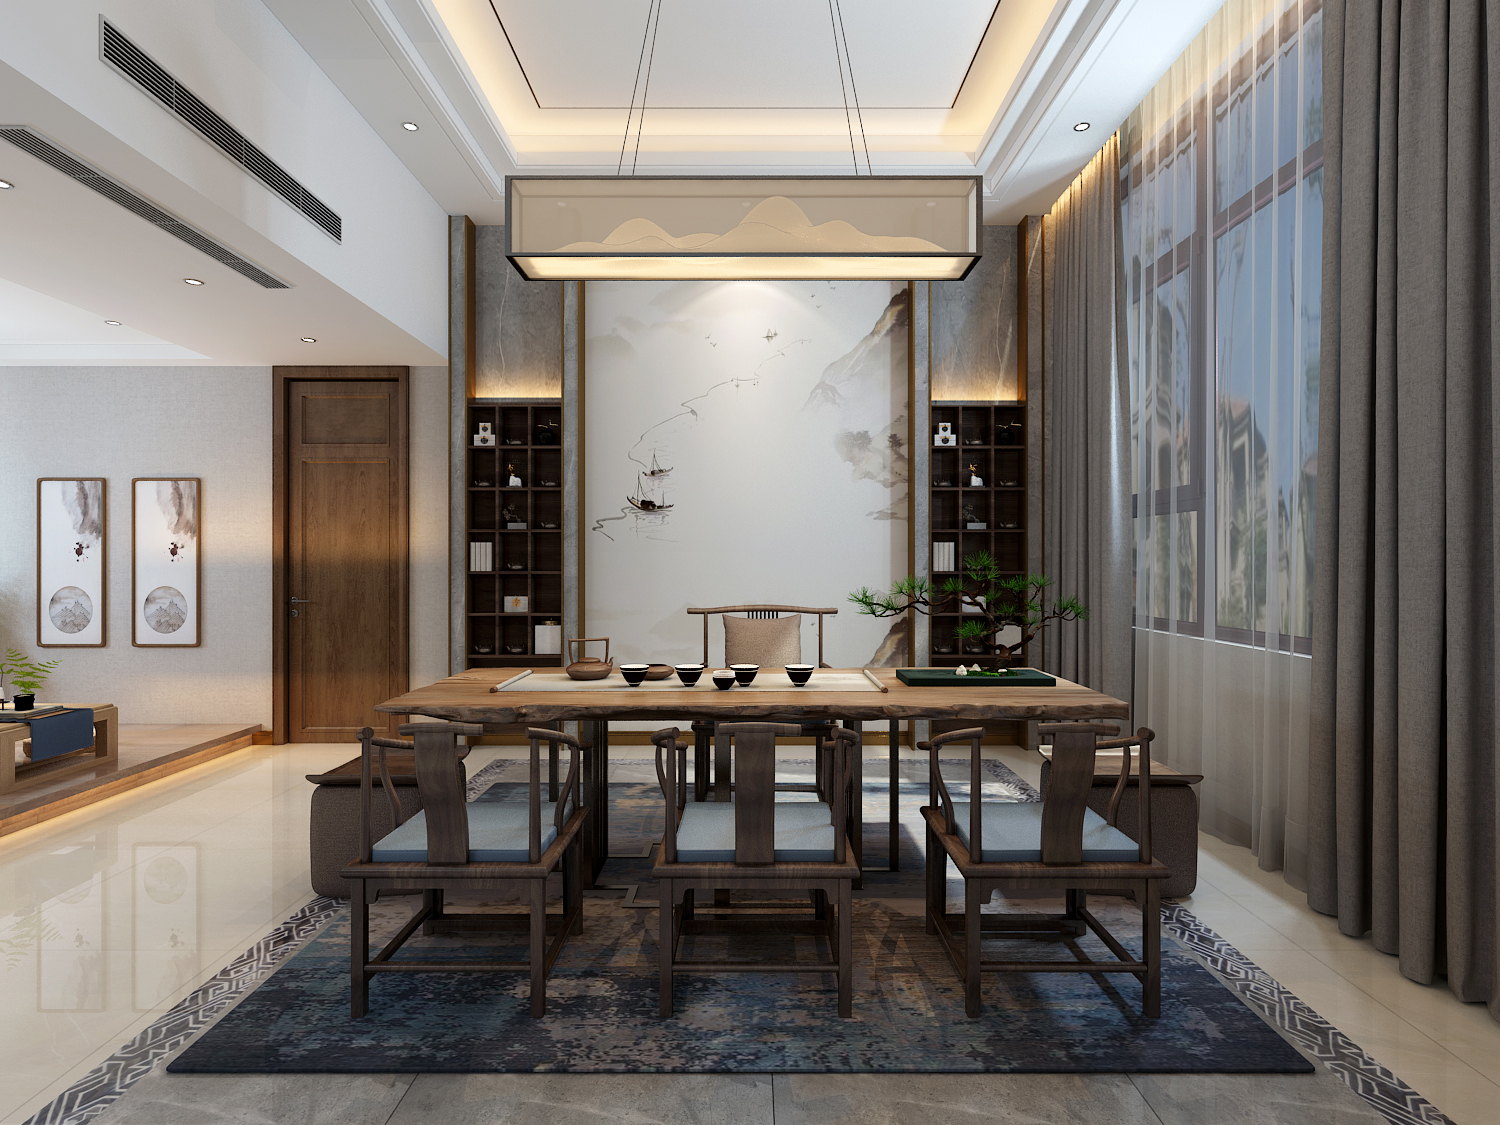 厨房装修效果图餐厅桌椅效果图新中式餐厅设计图片赏析